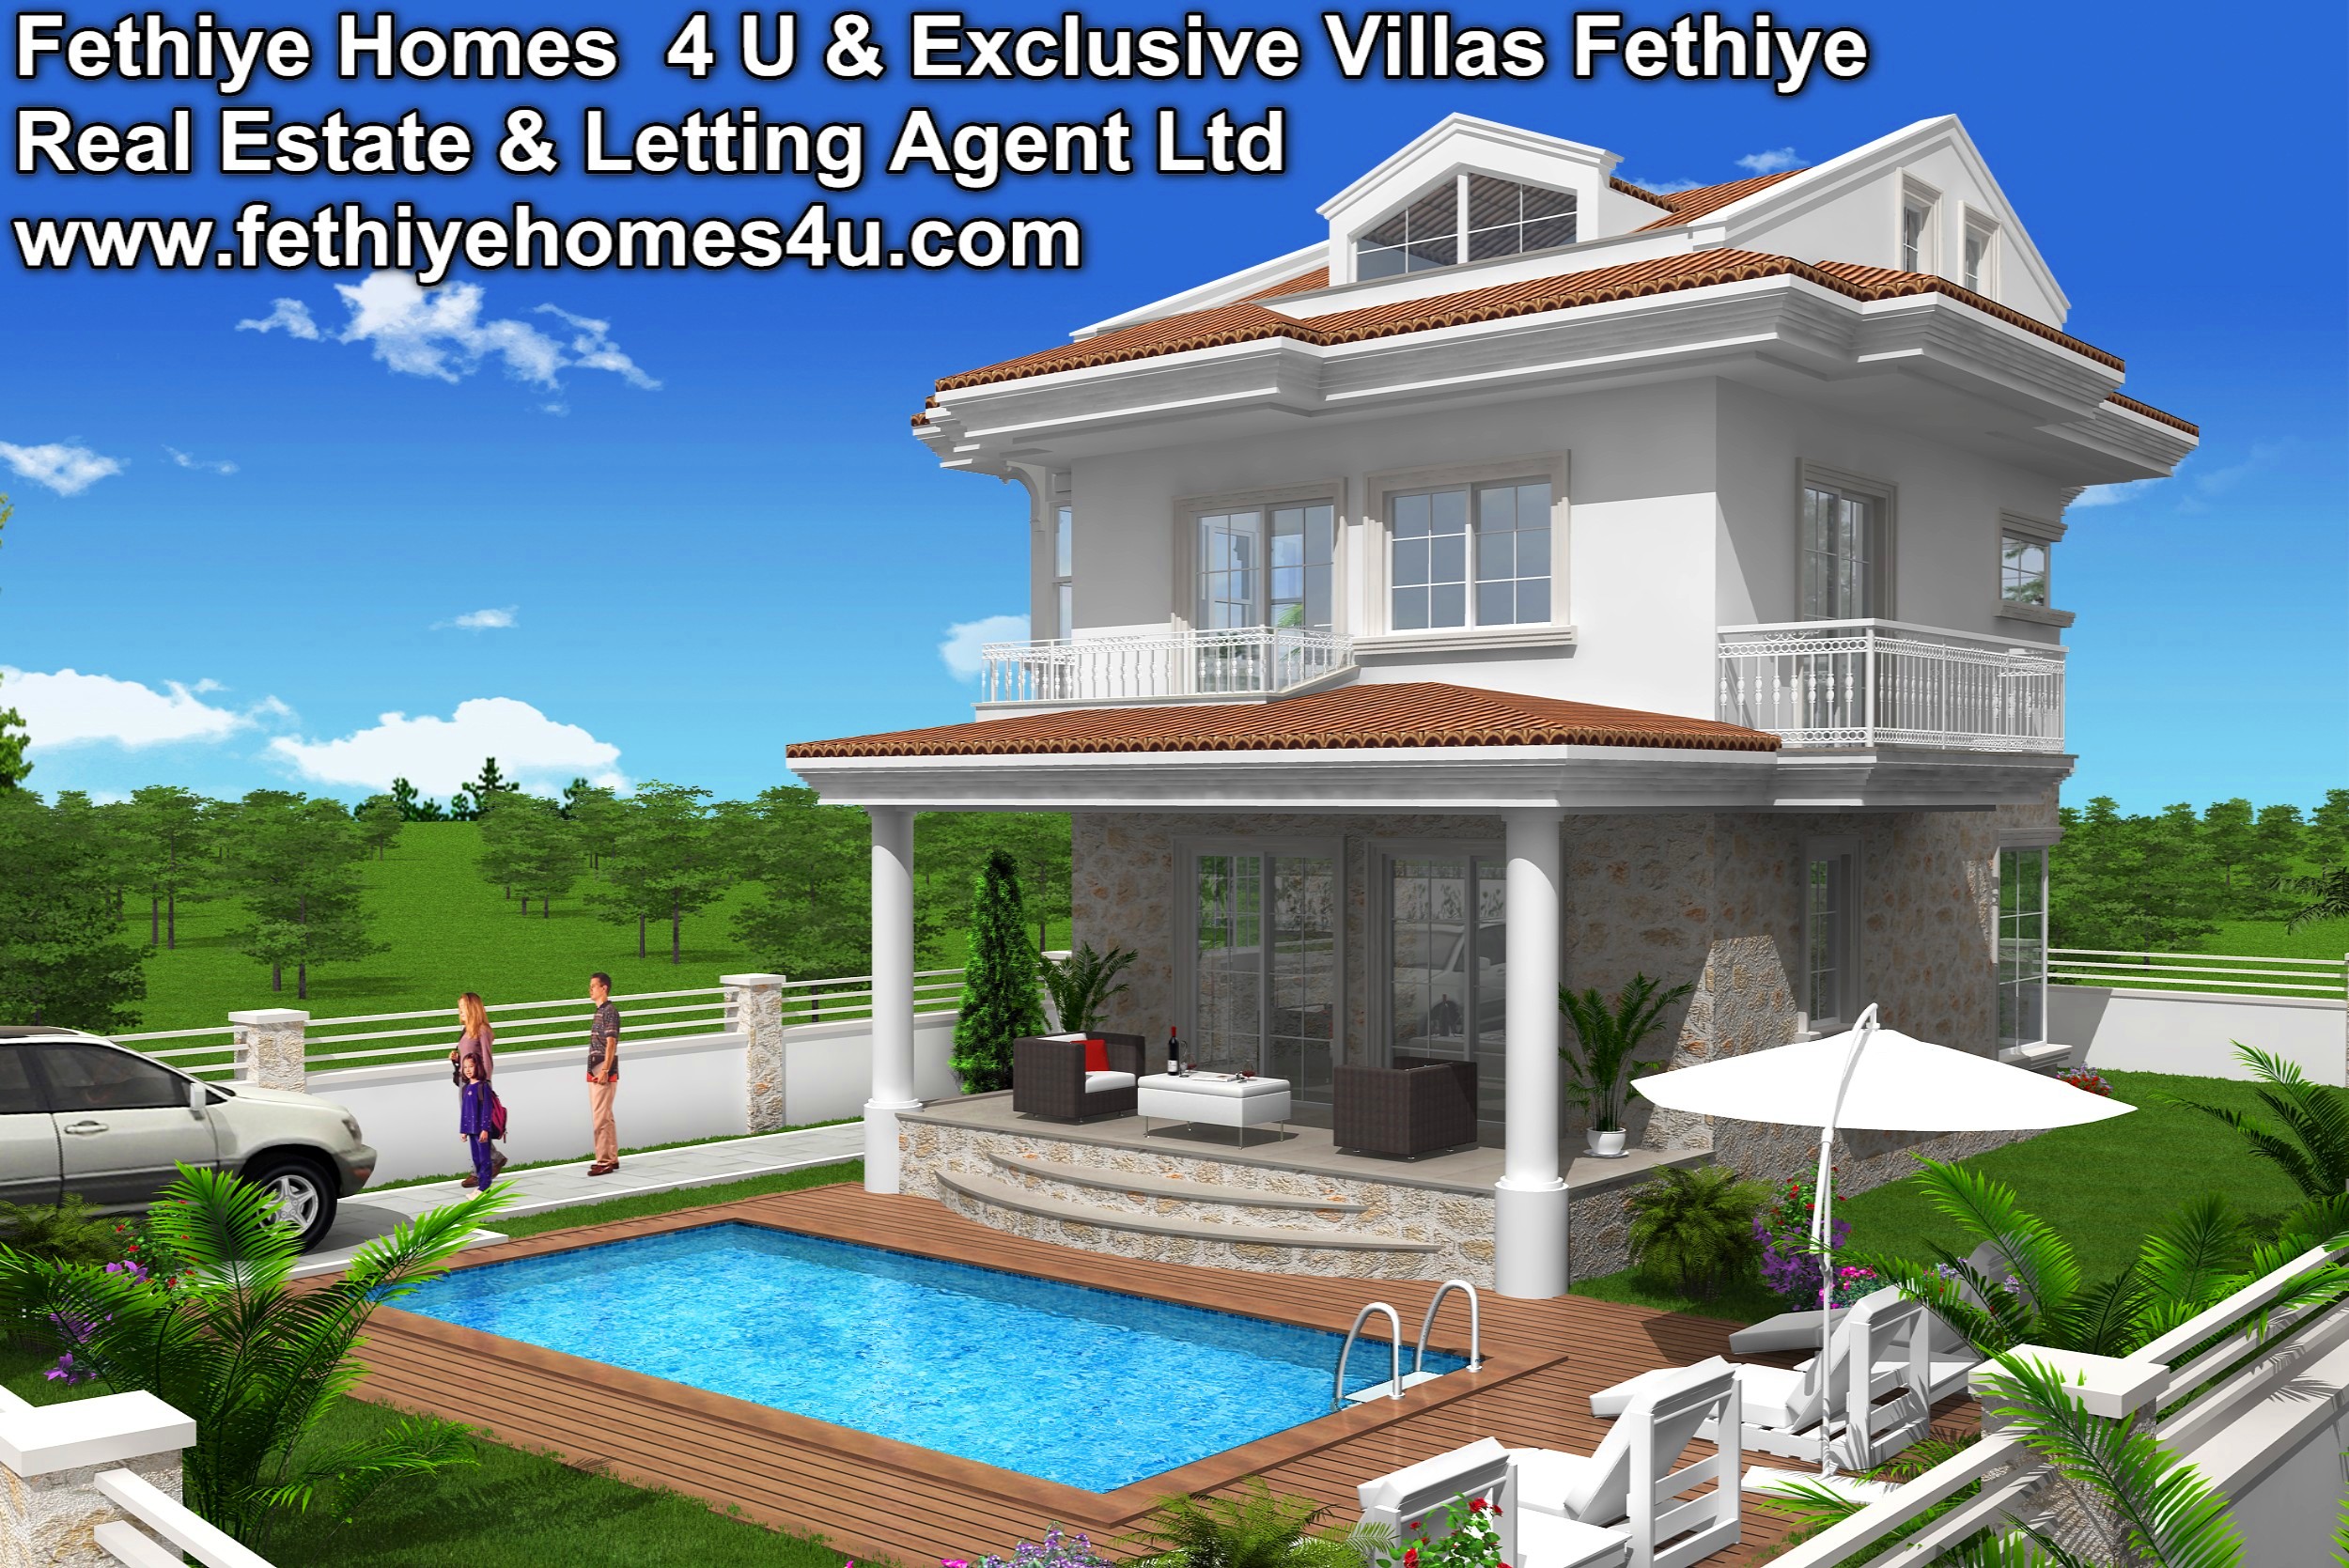 Fethiye Homes 4 U Ltd